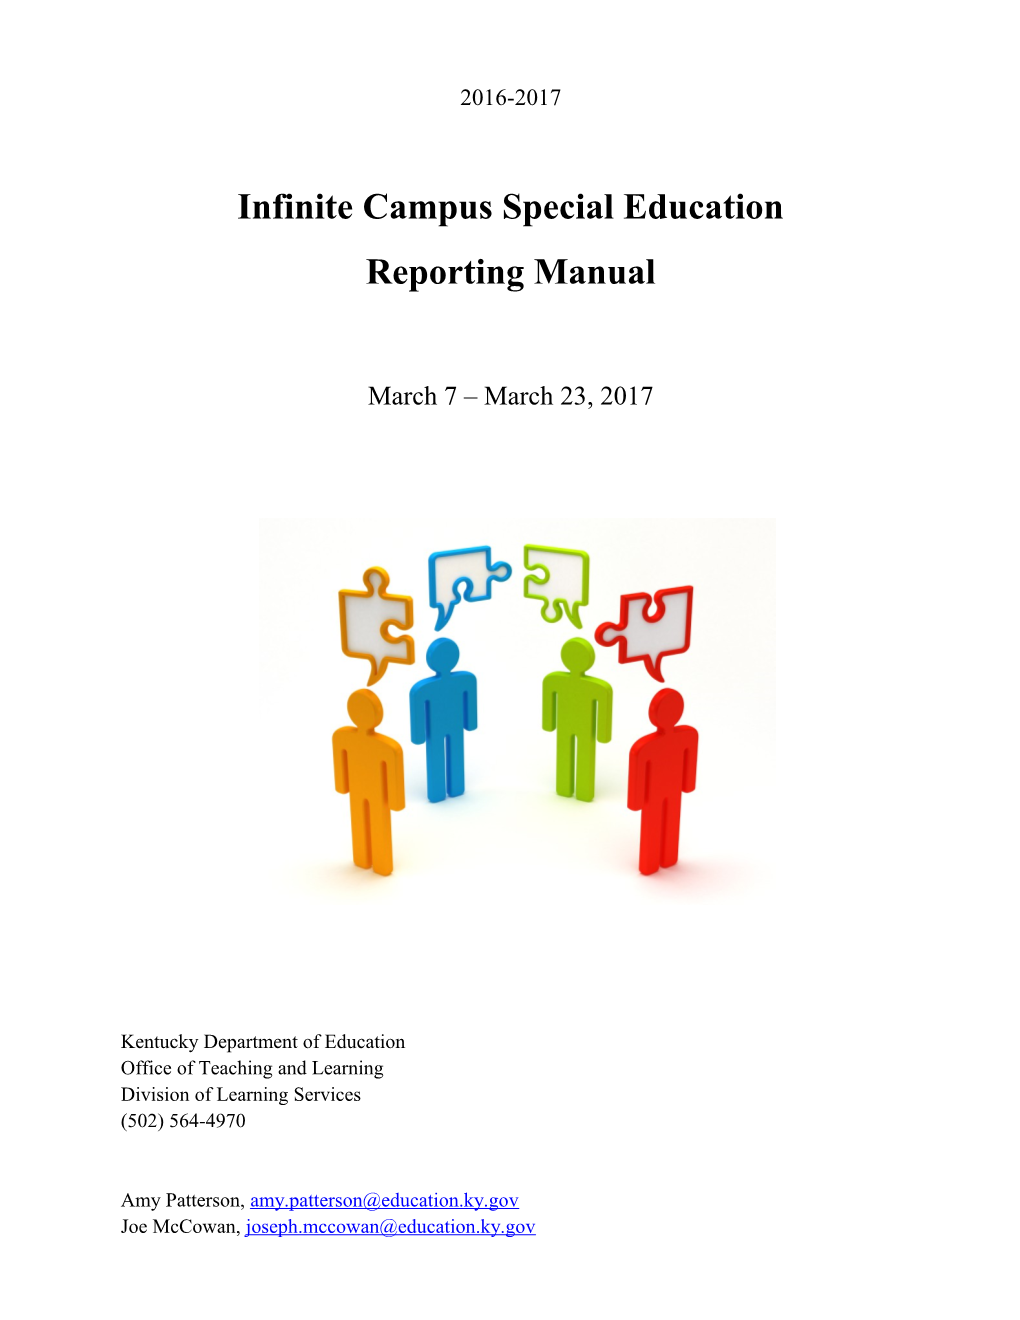 Infinite Campus Special Education